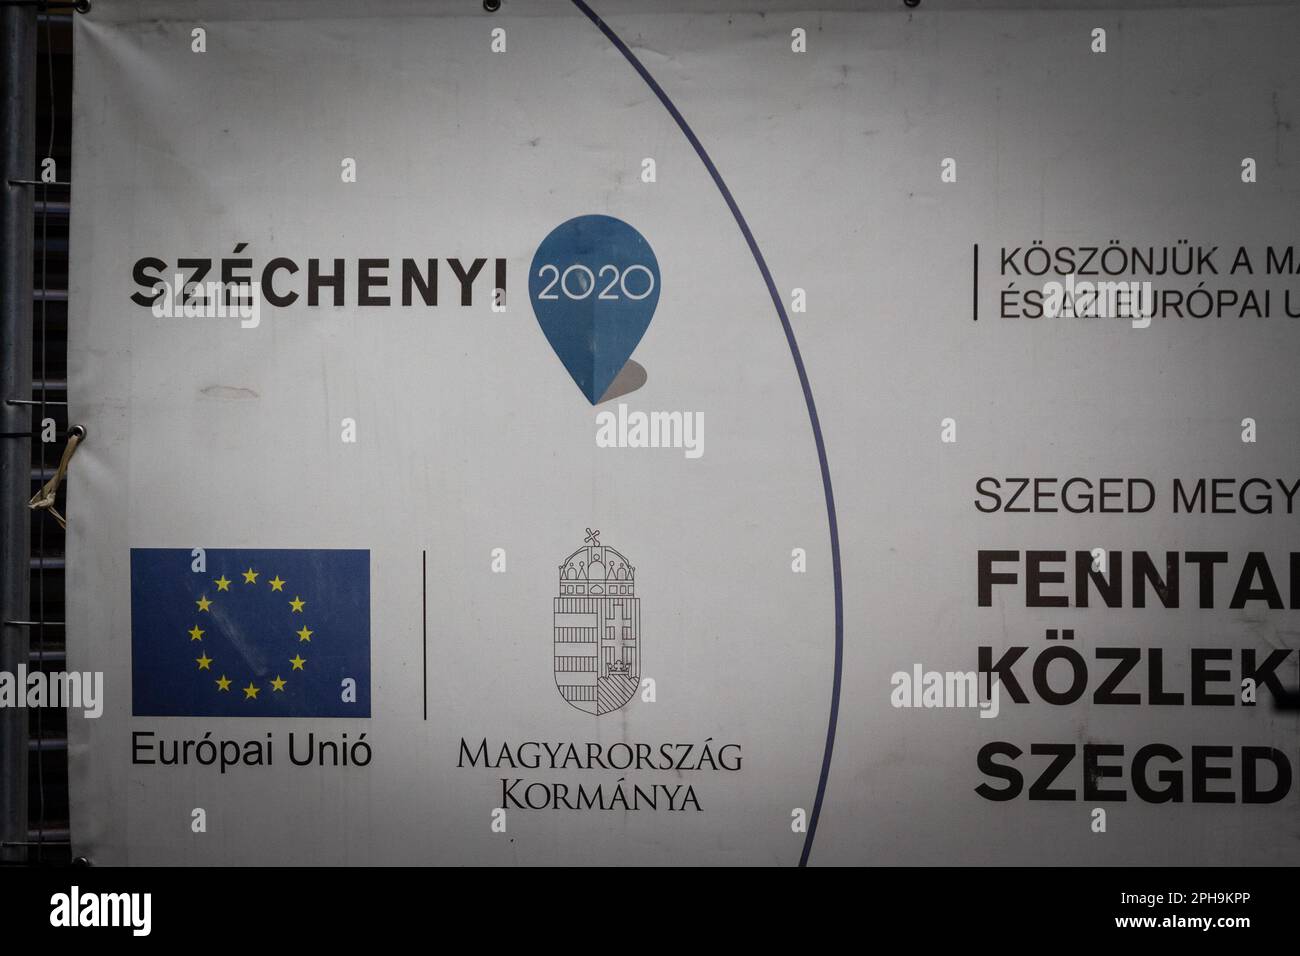 Abbildung eines Logos von Szechenyi 2020 auf dem Schild, das ein Entwicklungsprojekt in Szeged, Ungarn, kennzeichnet. Das Széchenyi-Programm 2020 ist der Entwurf des Programms o Stockfoto